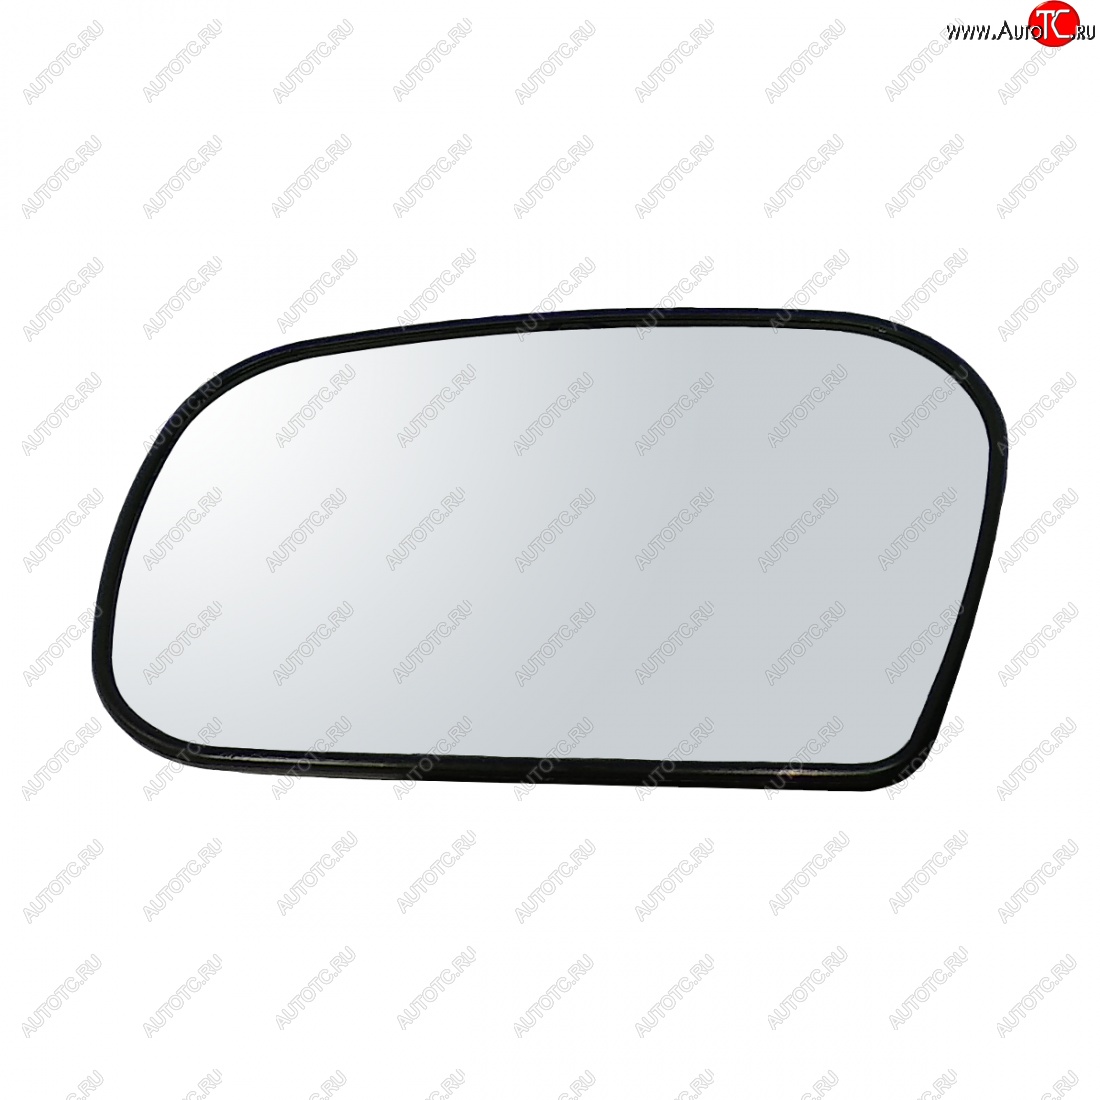 269 р. Левый зеркальный элемент (под квадр. моторедуктор в корпус ДААЗ) Автоблик2 Chevrolet Niva 2123 дорестайлинг (2002-2008) (без антибликового покрытия)